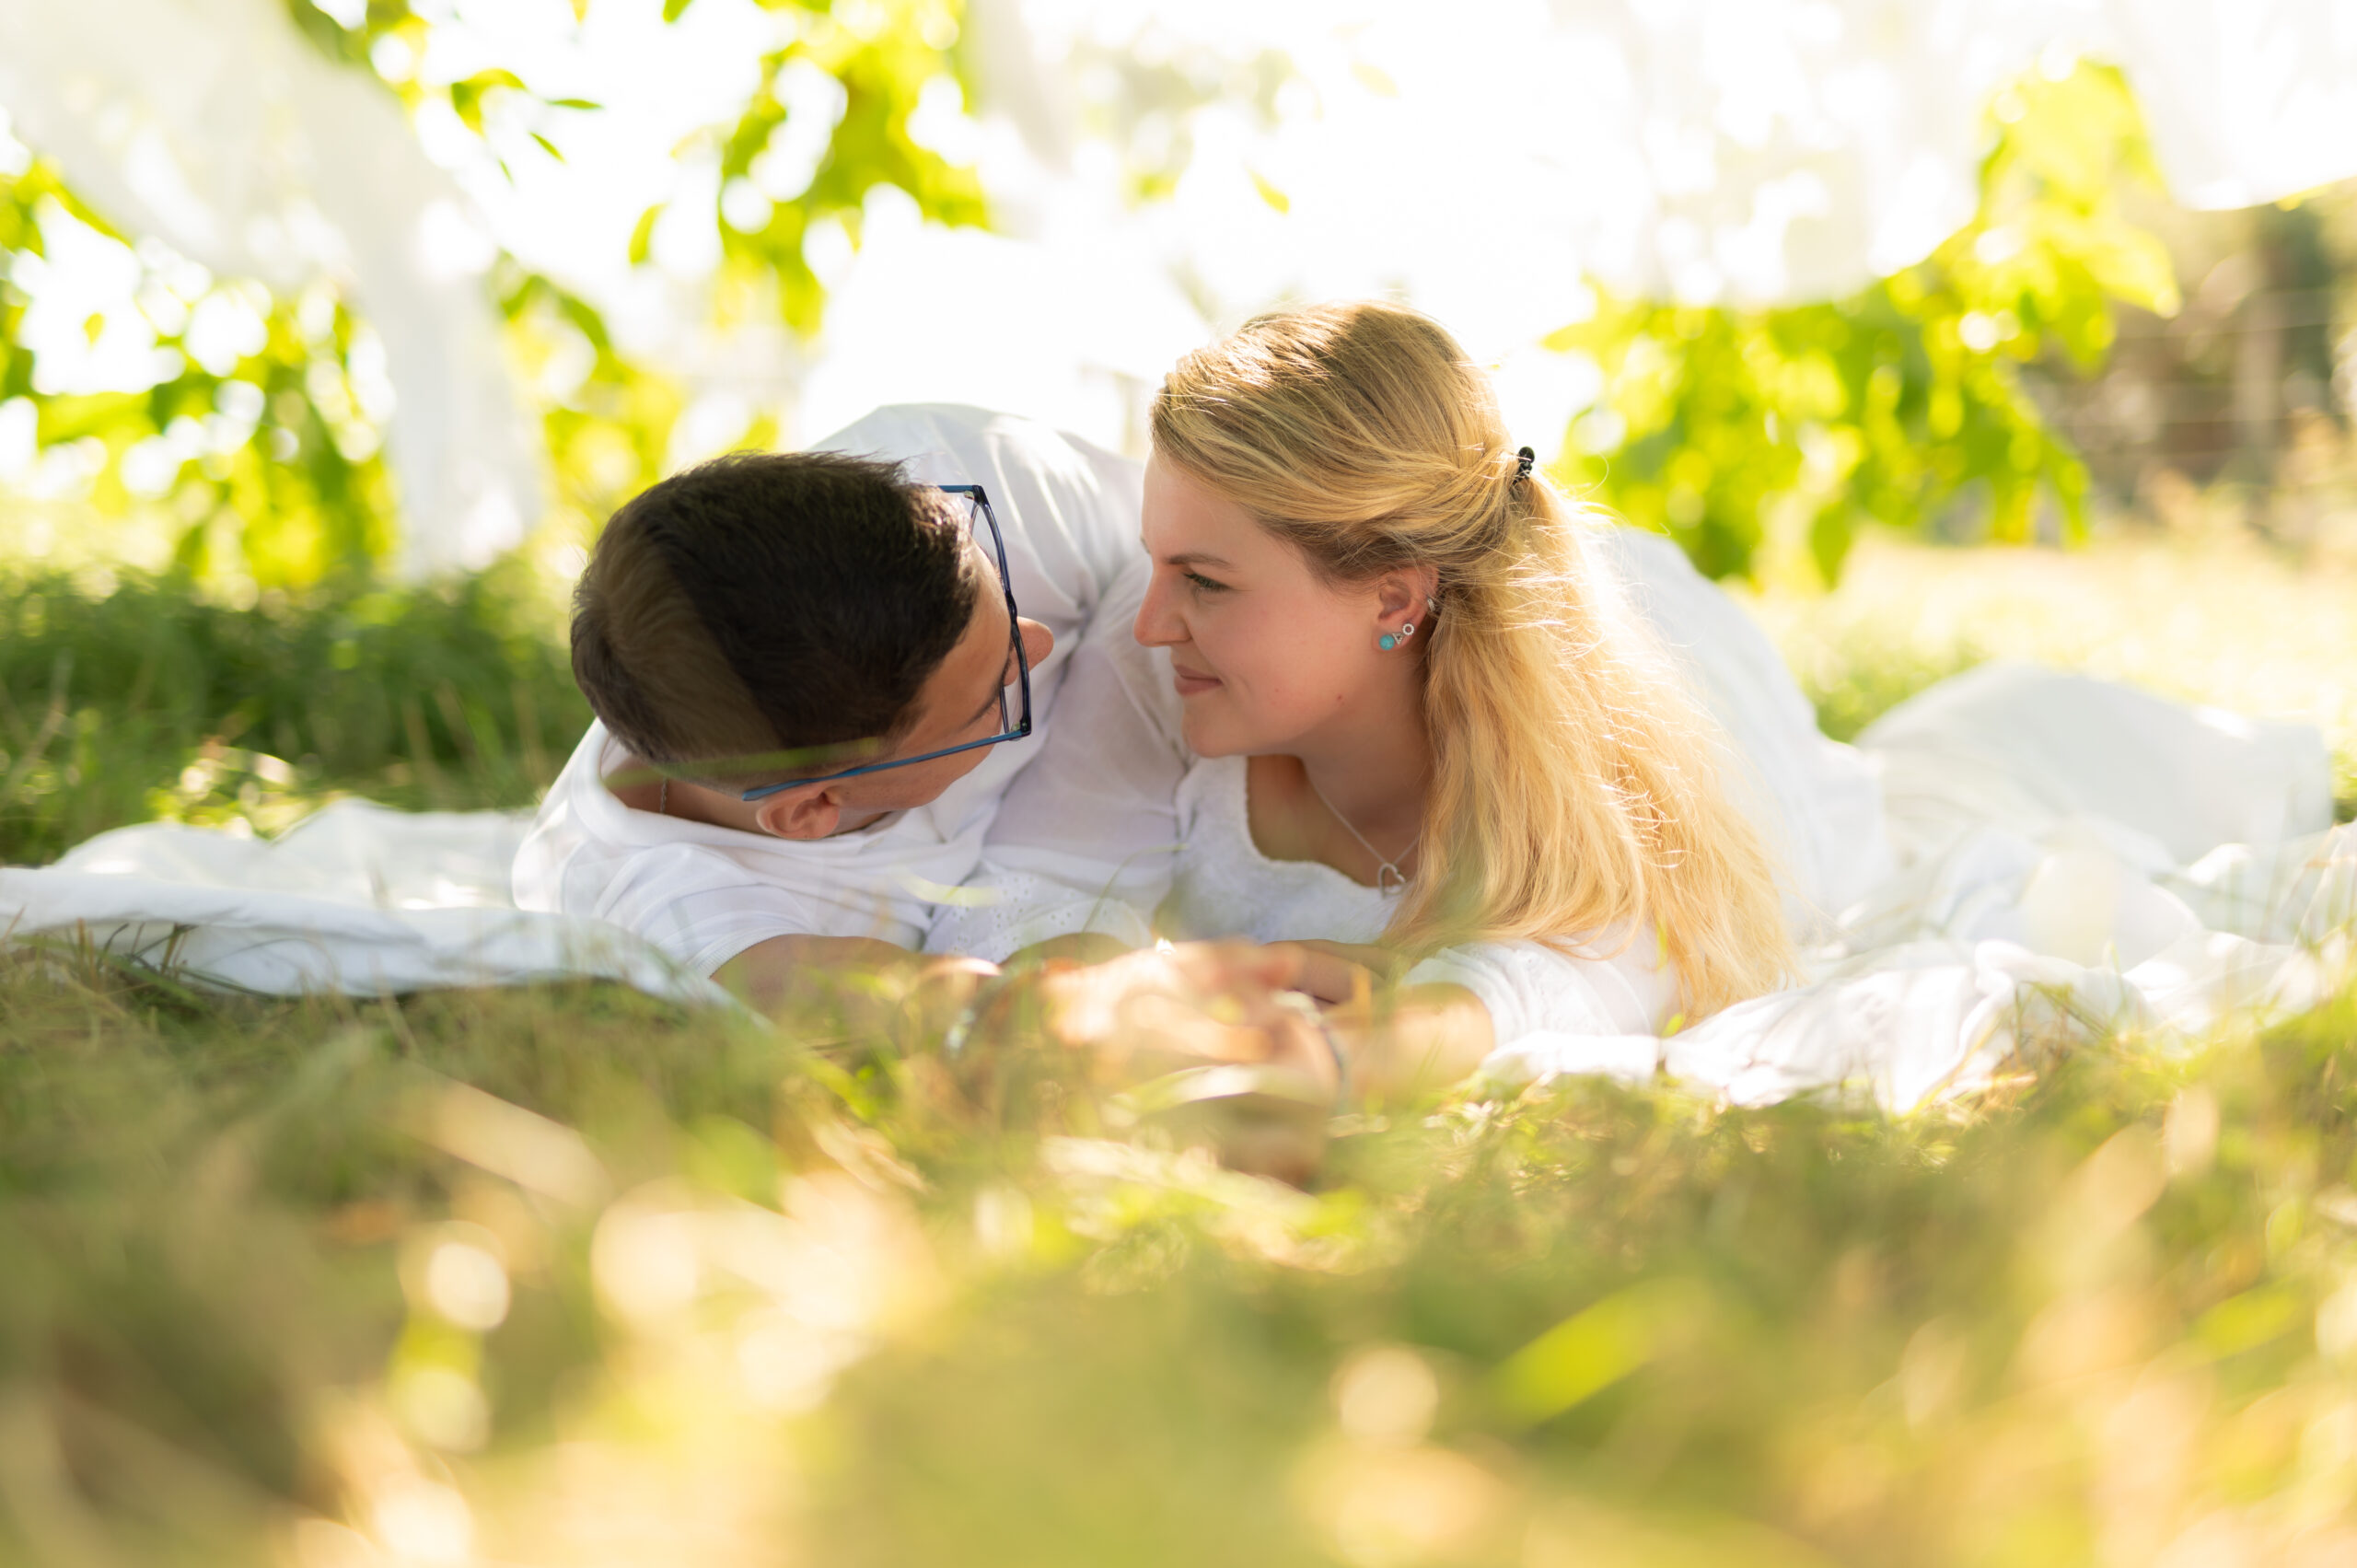 photographe professionnelle couple amour complicité tendresse extérieur arbre foret blanc voilage couleur naturelle regard amoureux